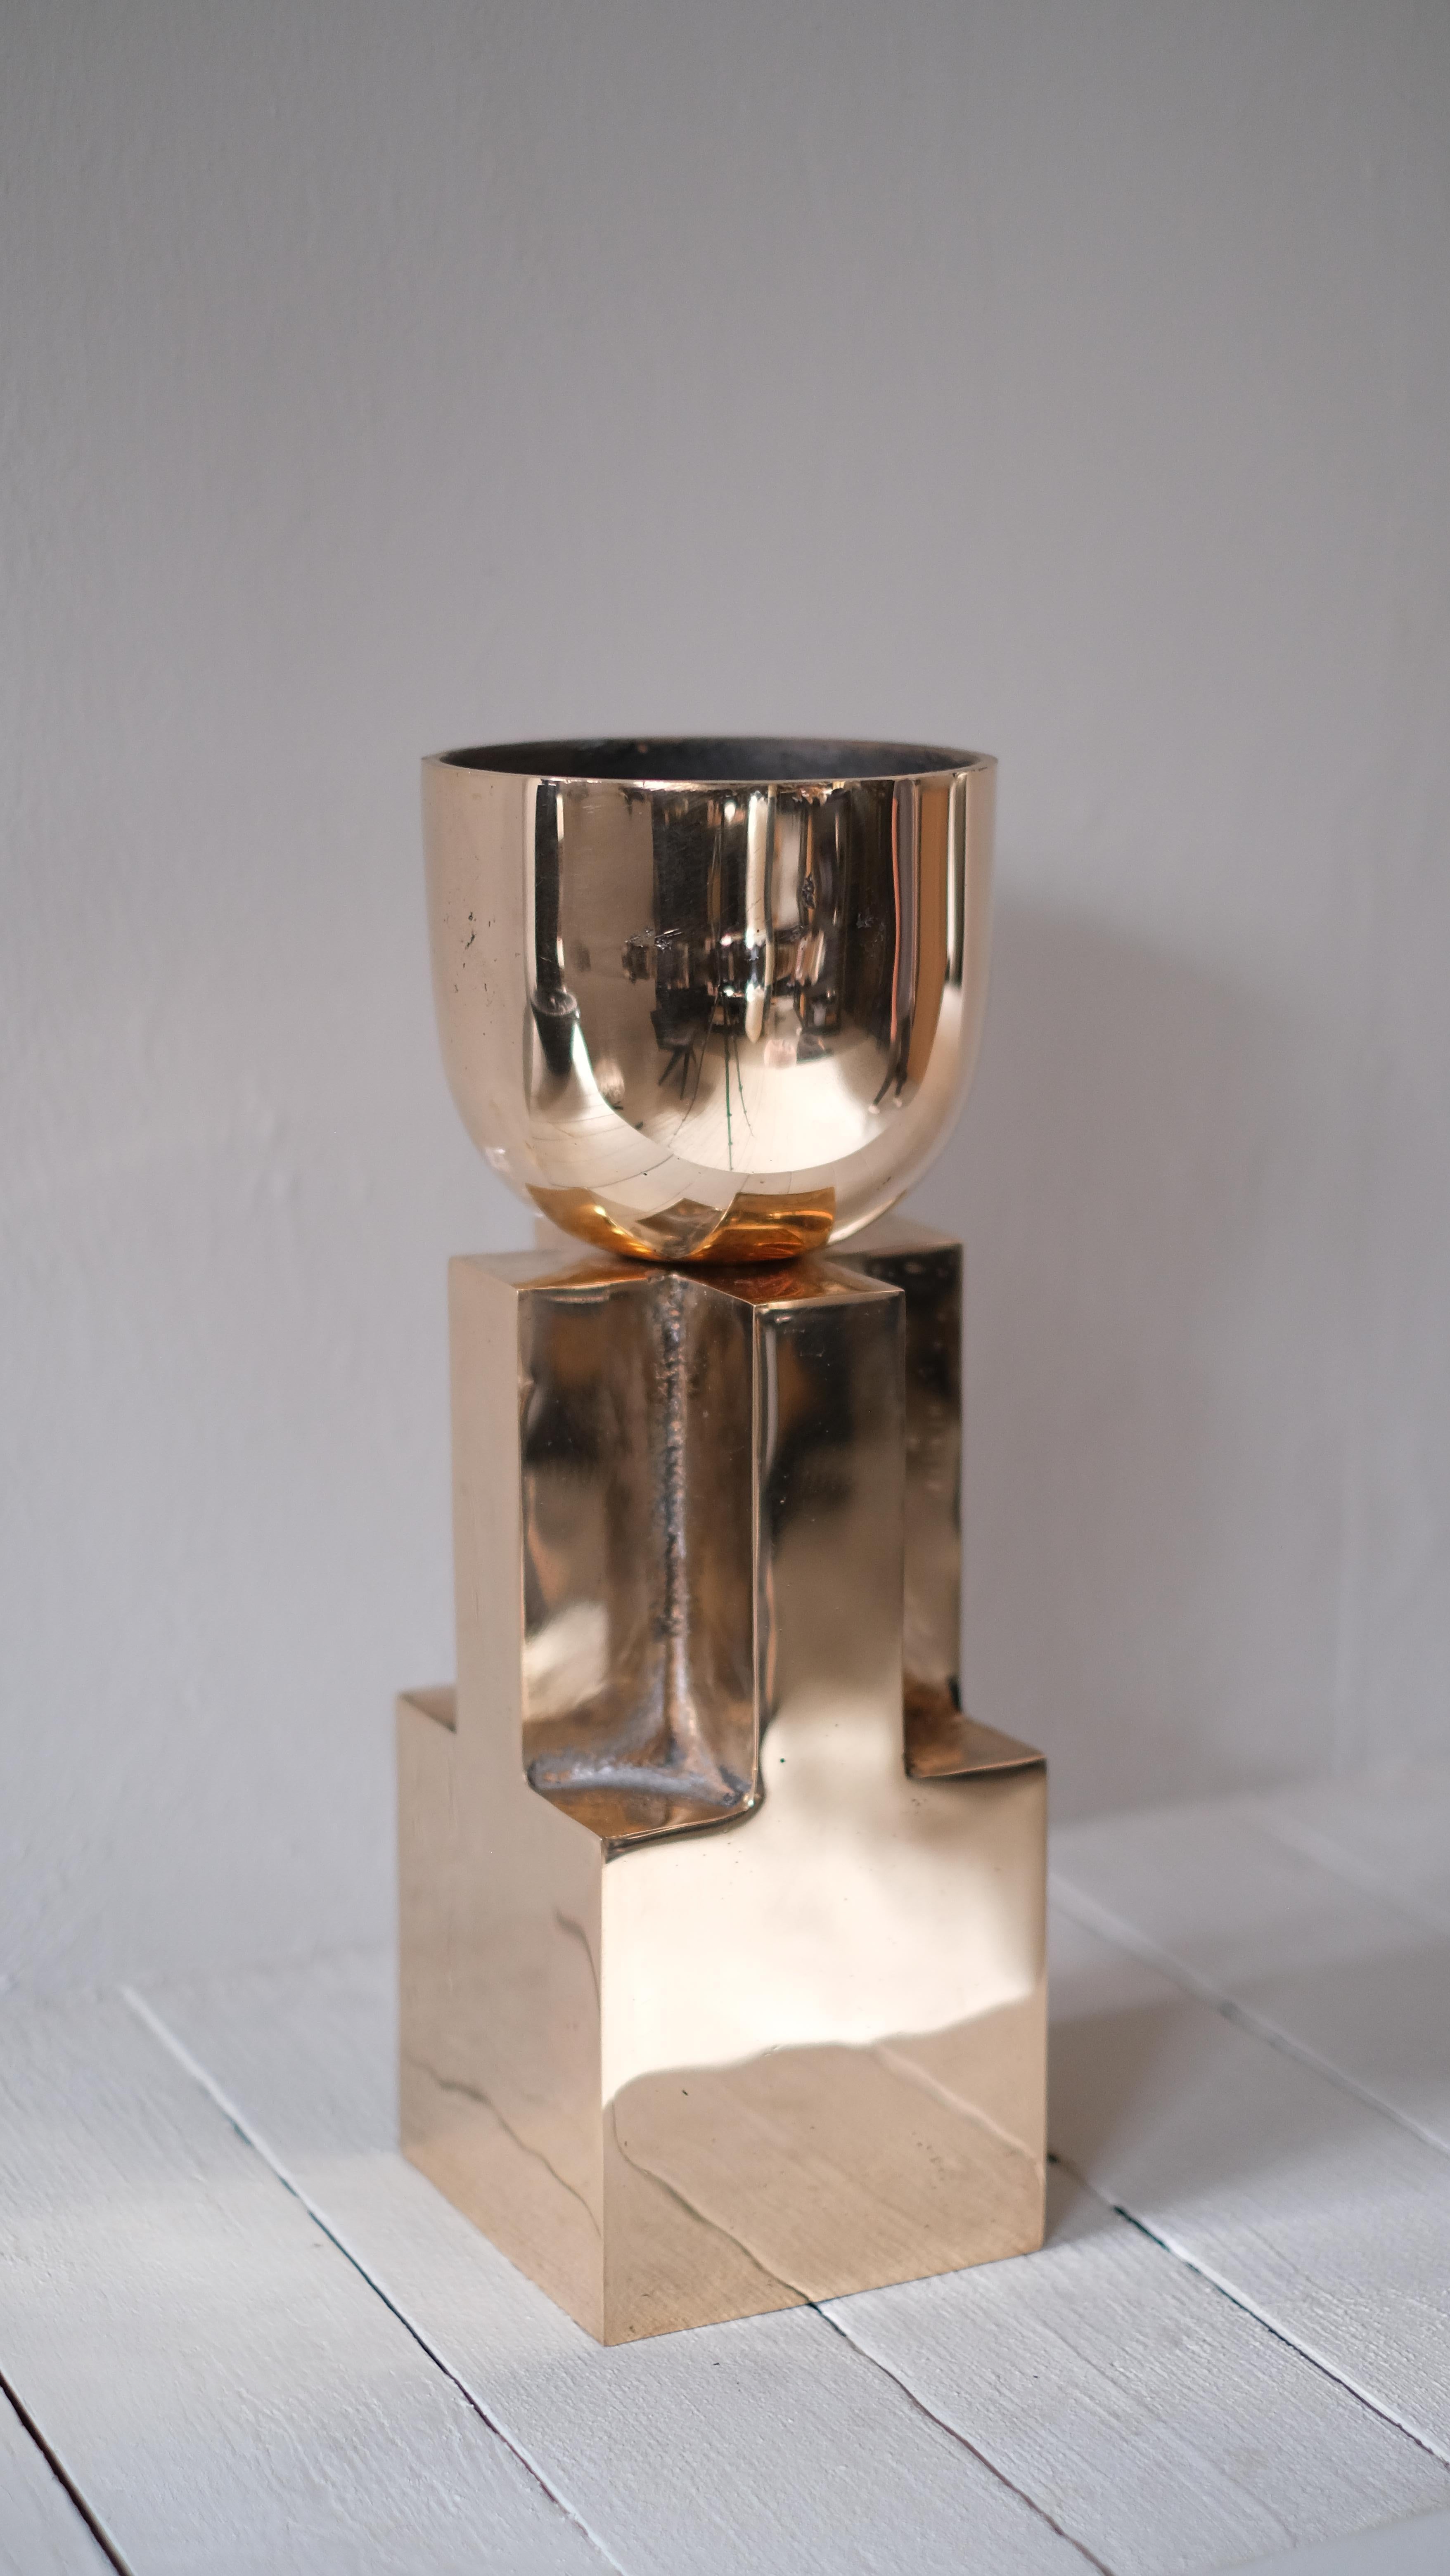 Coupe en bronze - Signée Arno Declercq
Mesures : 14 cm L x 14 cm L x 40 cm H
5.5